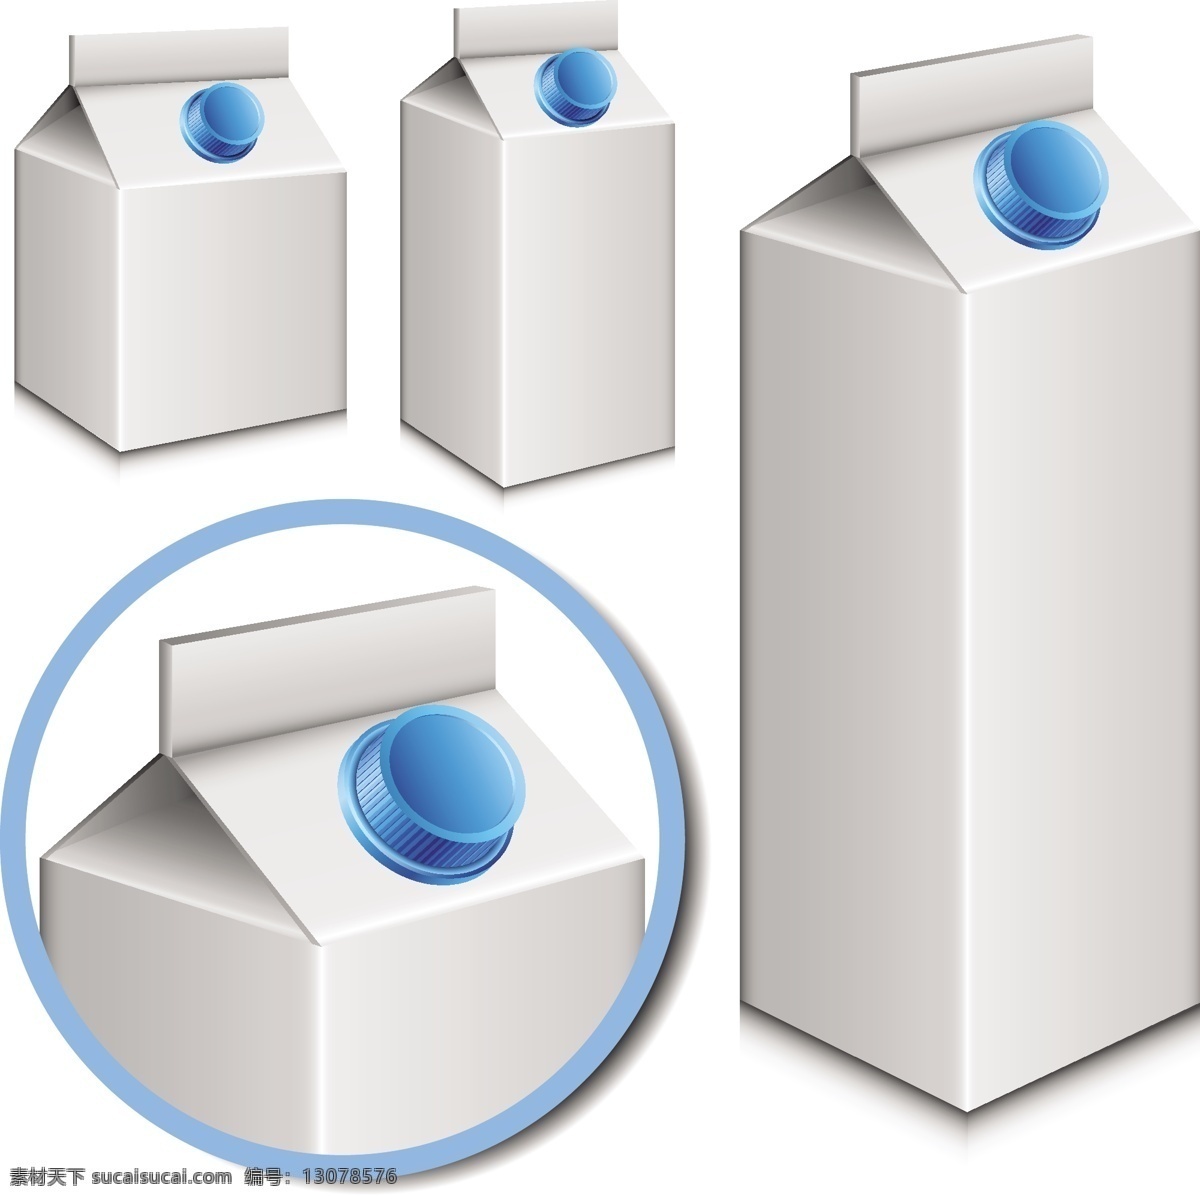 果汁饮料盒子 果汁盒 果汁包装盒 牛奶包装盒 酸奶包装盒 盒子 罐装 饮料包装盒 包装盒 果汁 样机 产品效果图